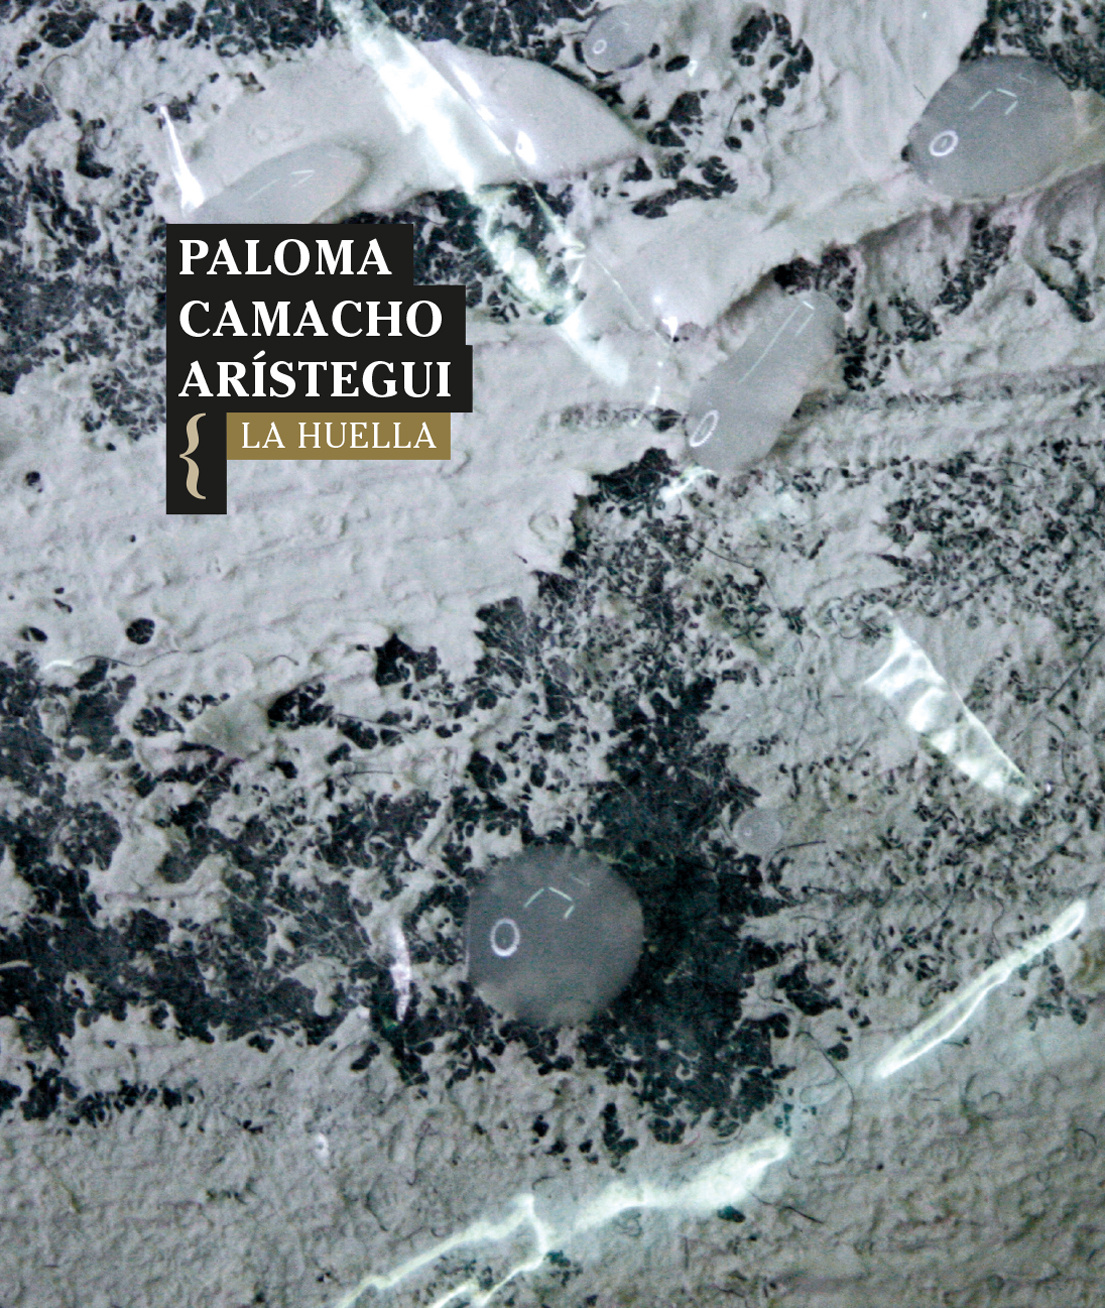 5 poemas de «La huella», de Paloma Camacho Arístegui